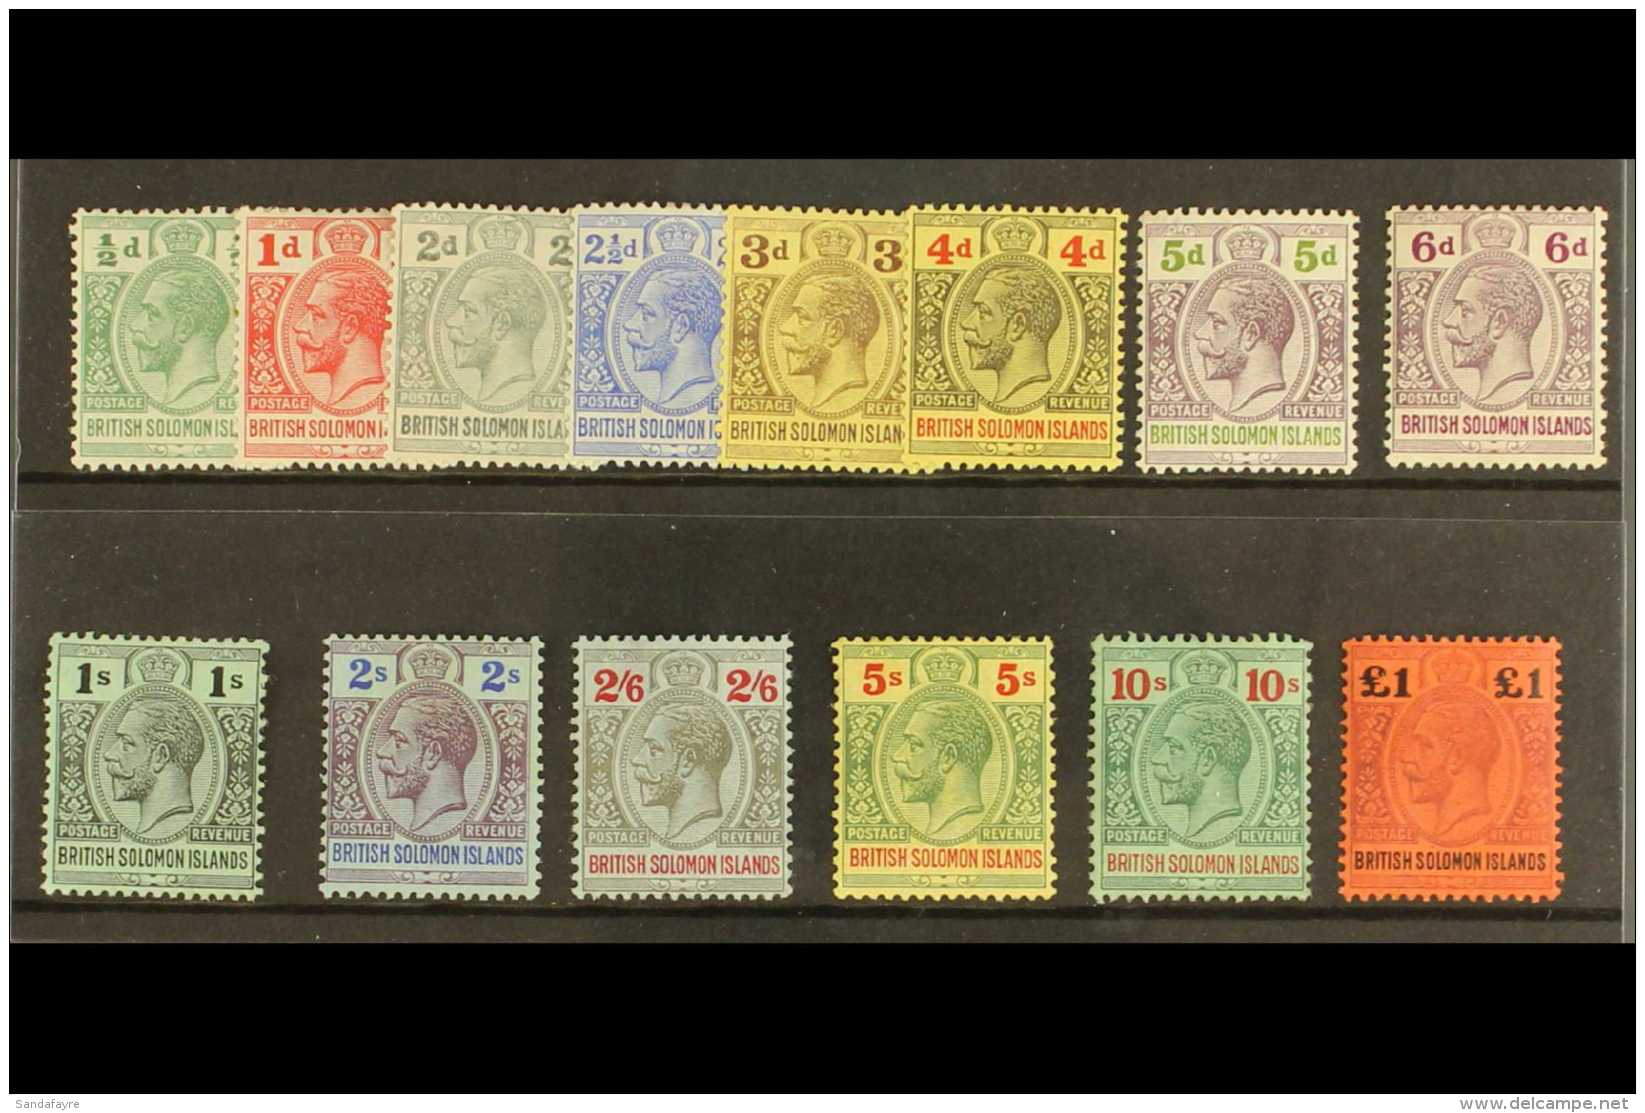 1914-23 Wmk Mult Crown CA Definitives Complete Set, SG 22/38, Fine Mint (14 Stamps) For More Images, Please Visit... - Iles Salomon (...-1978)